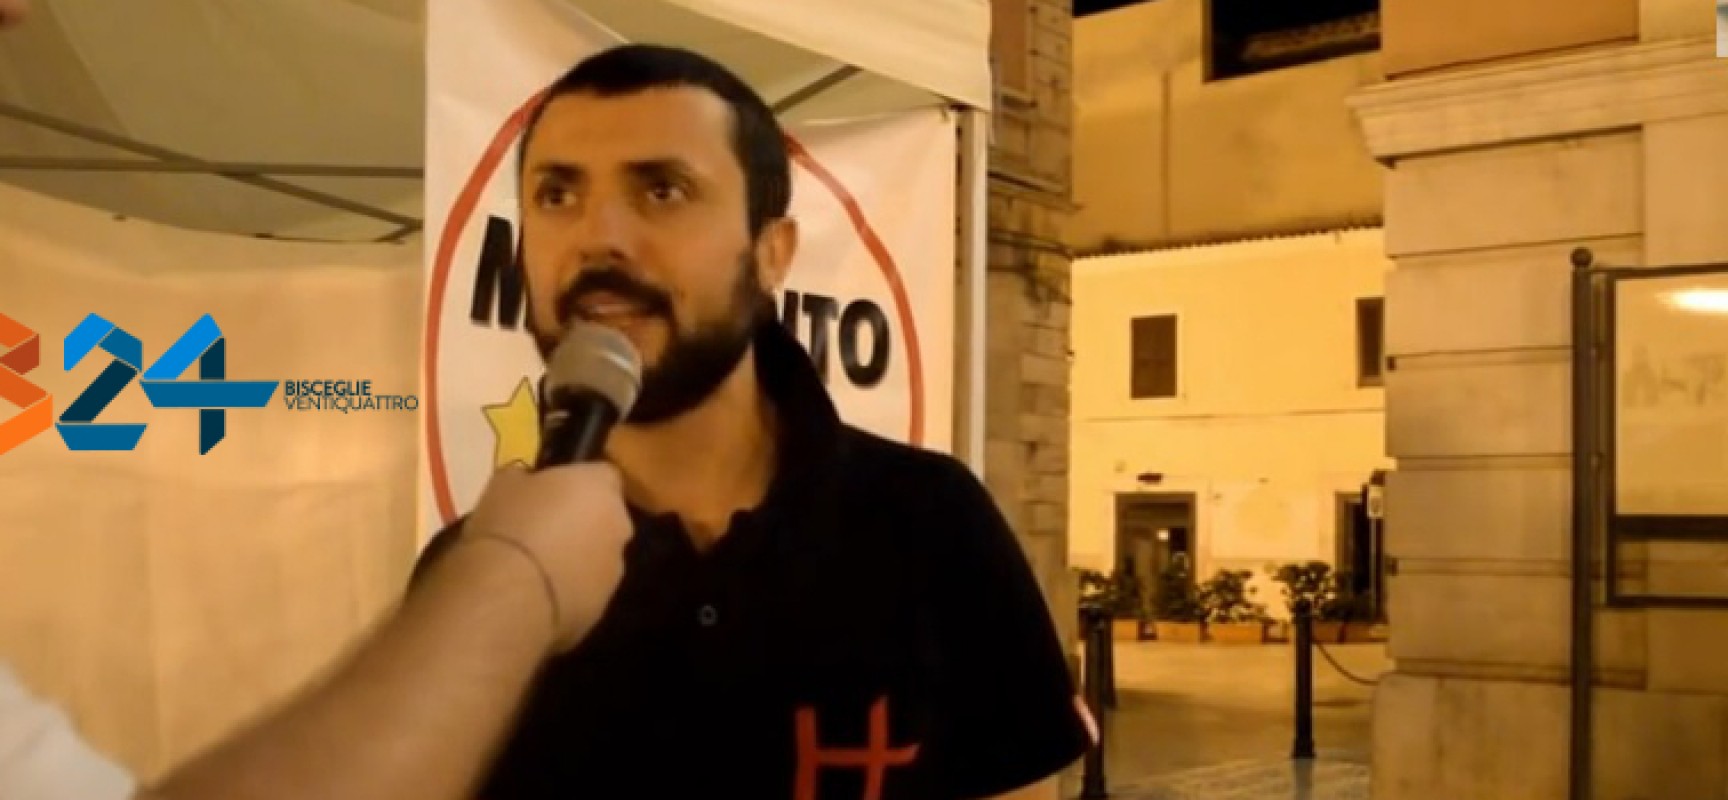 Arresto politici tranesi, D’Ambrosio (M5s): «Ma Spina, Amoruso e Boccia cosa ne pensano?»